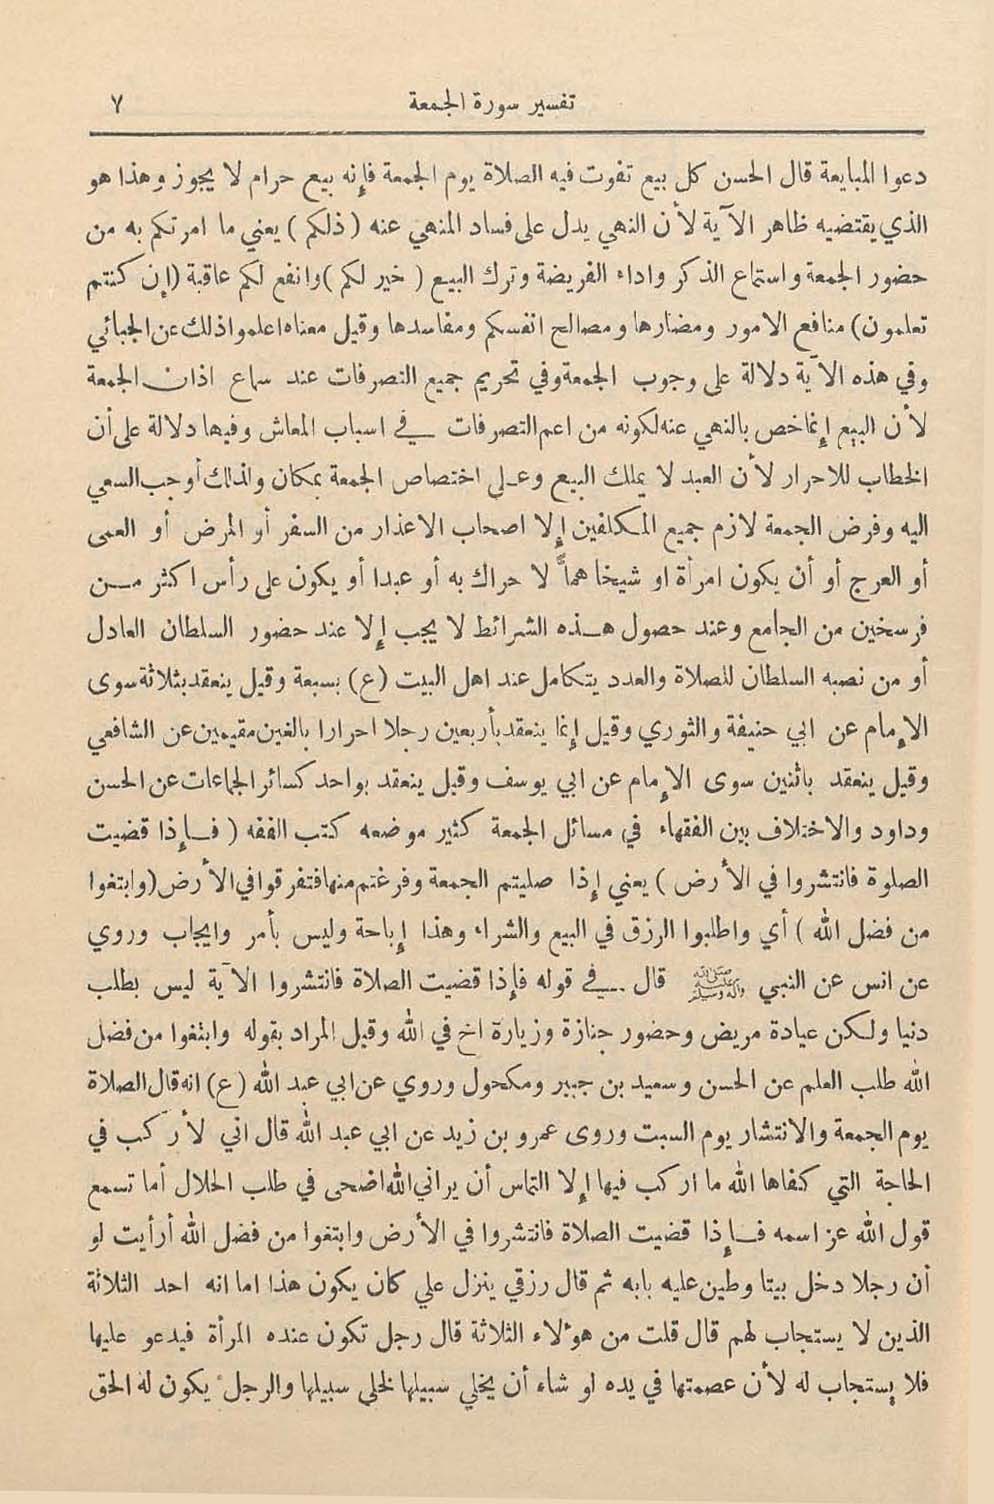 الأرشيف: العرفان العدد 1 تاريخ الإصدار 01 مارس 1938 مقالة تفسير سورة الجمعة